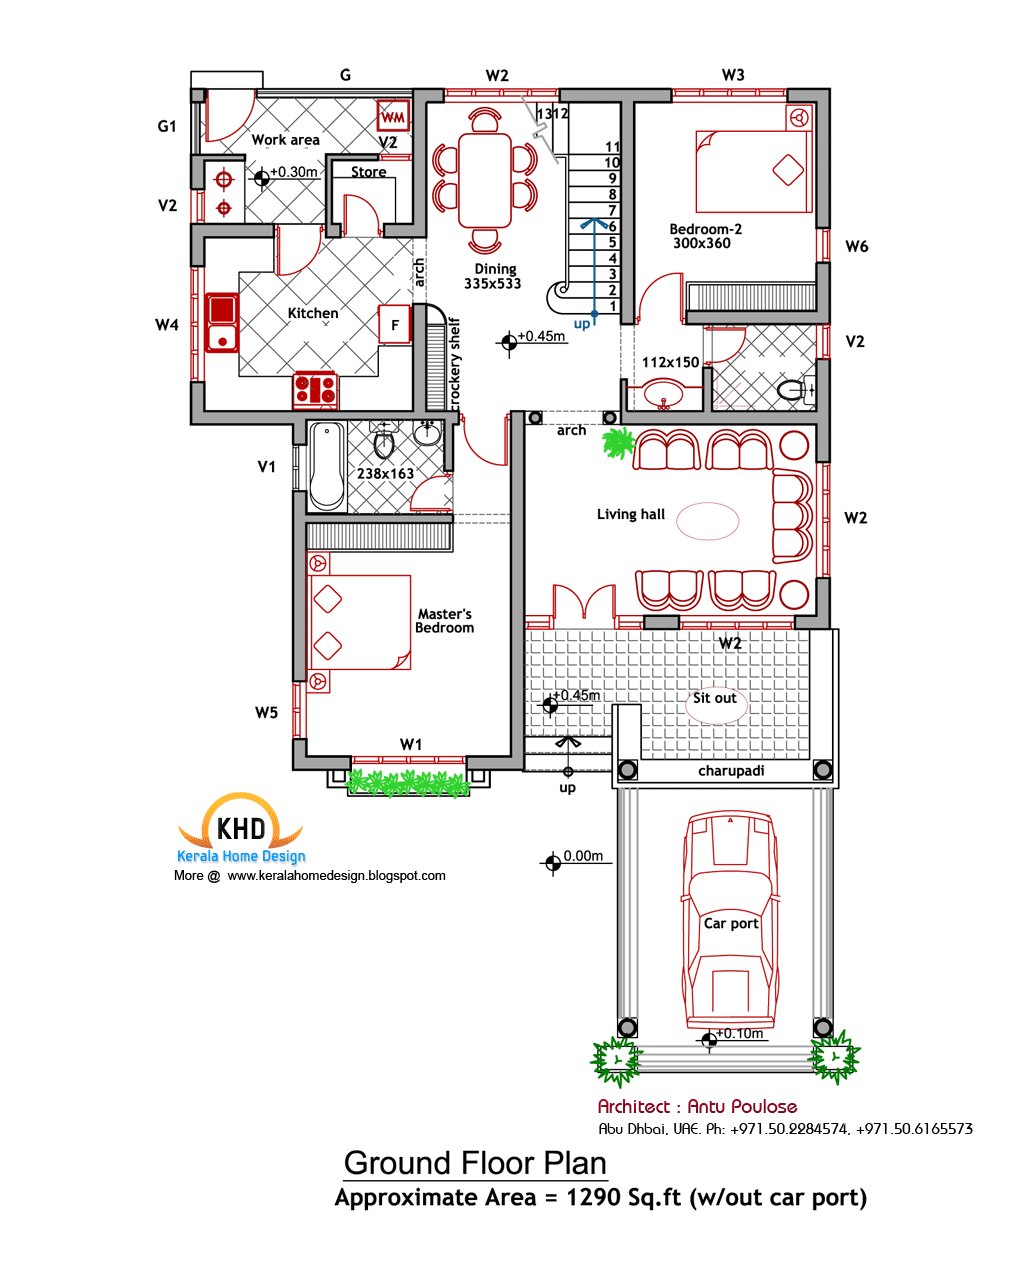 2 Bedroom Apartment Building Floor Plans